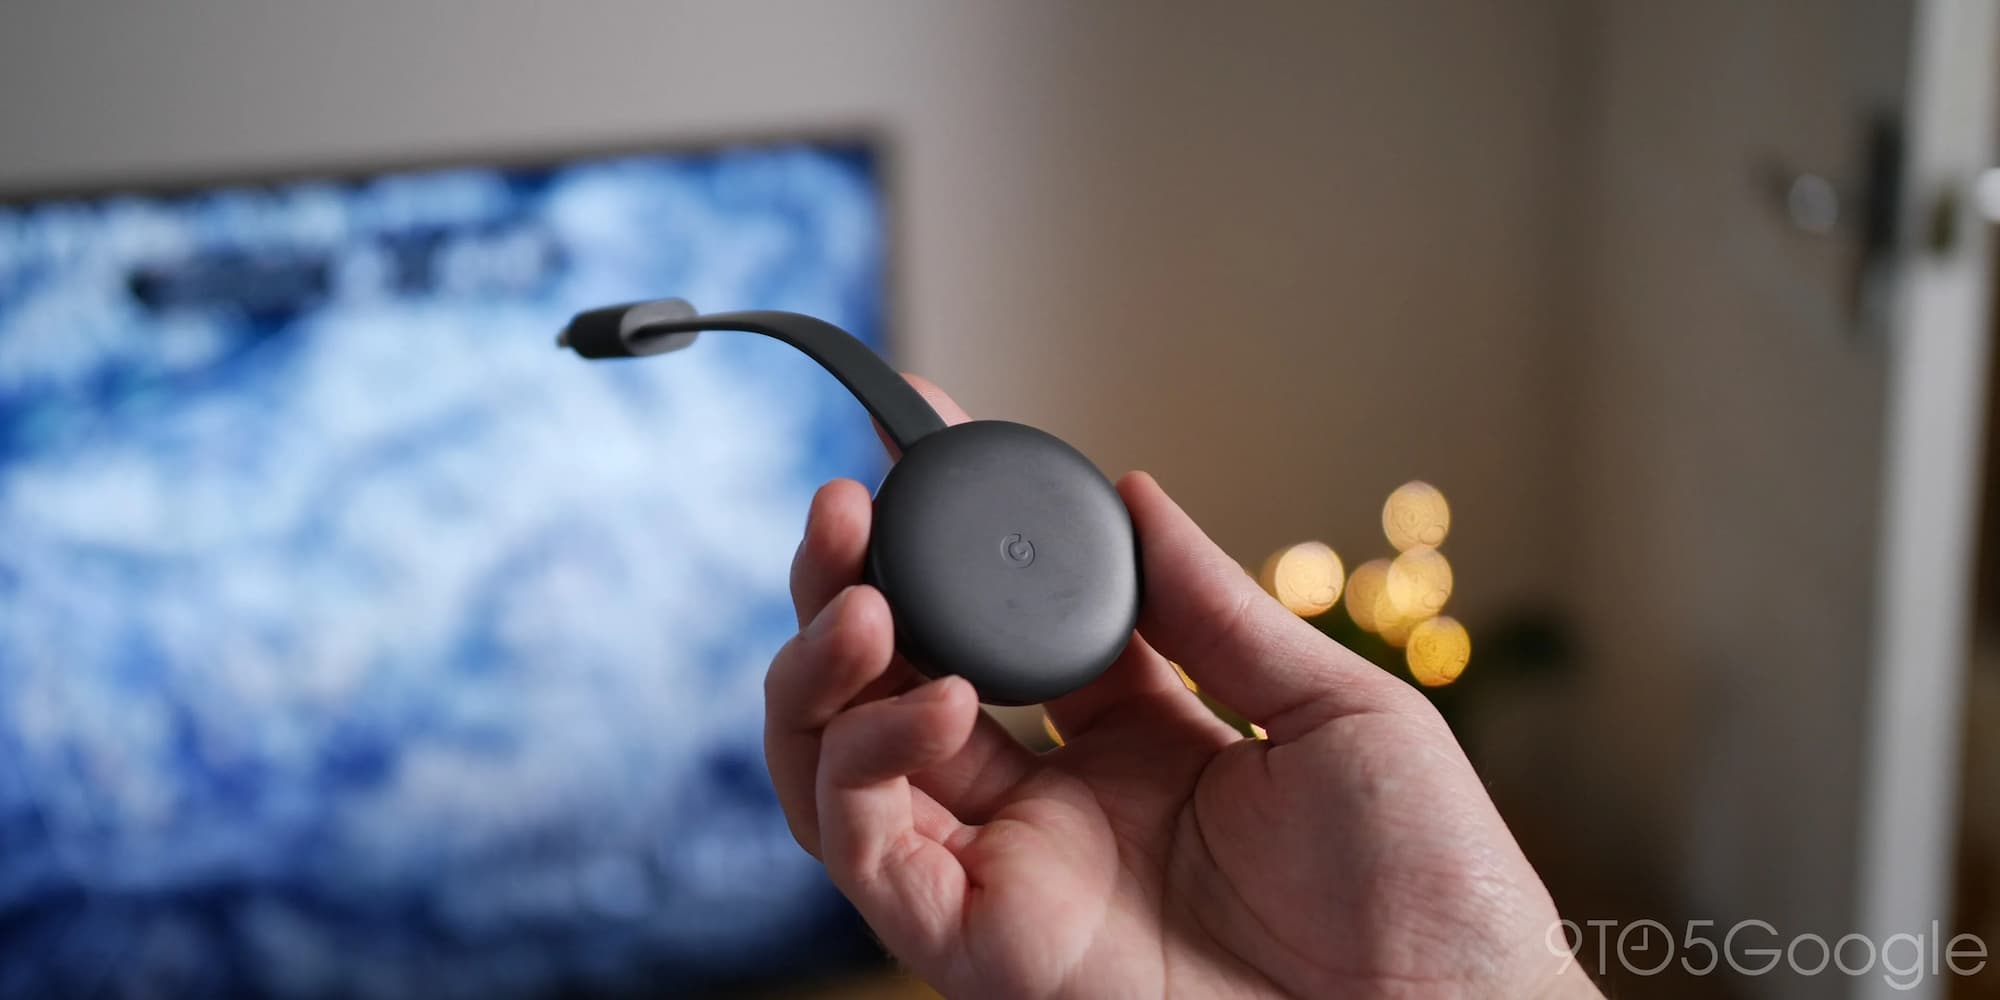 After a decade, Google drops support for original Chromecast